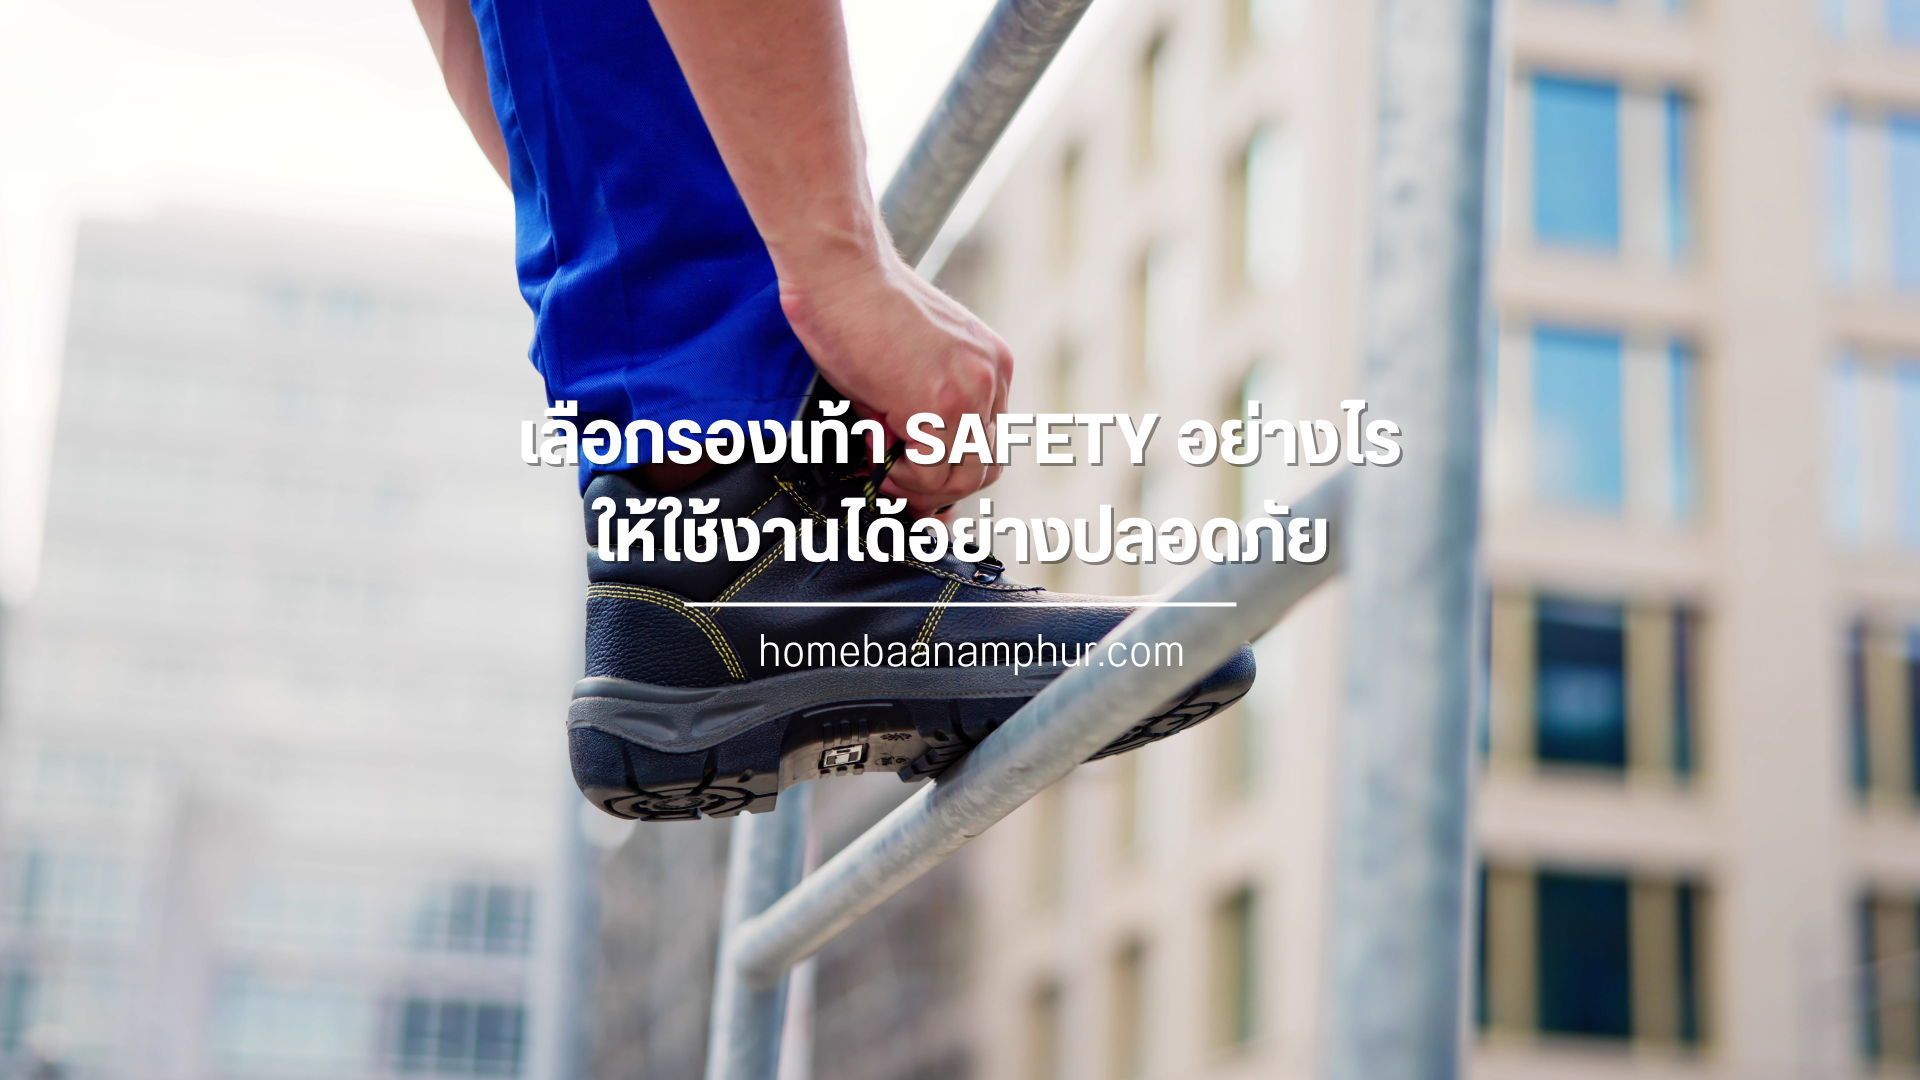 เลือกรองเท้า SAFETY อย่างไร  ให้ใช้งานได้อย่างปลอดภัย